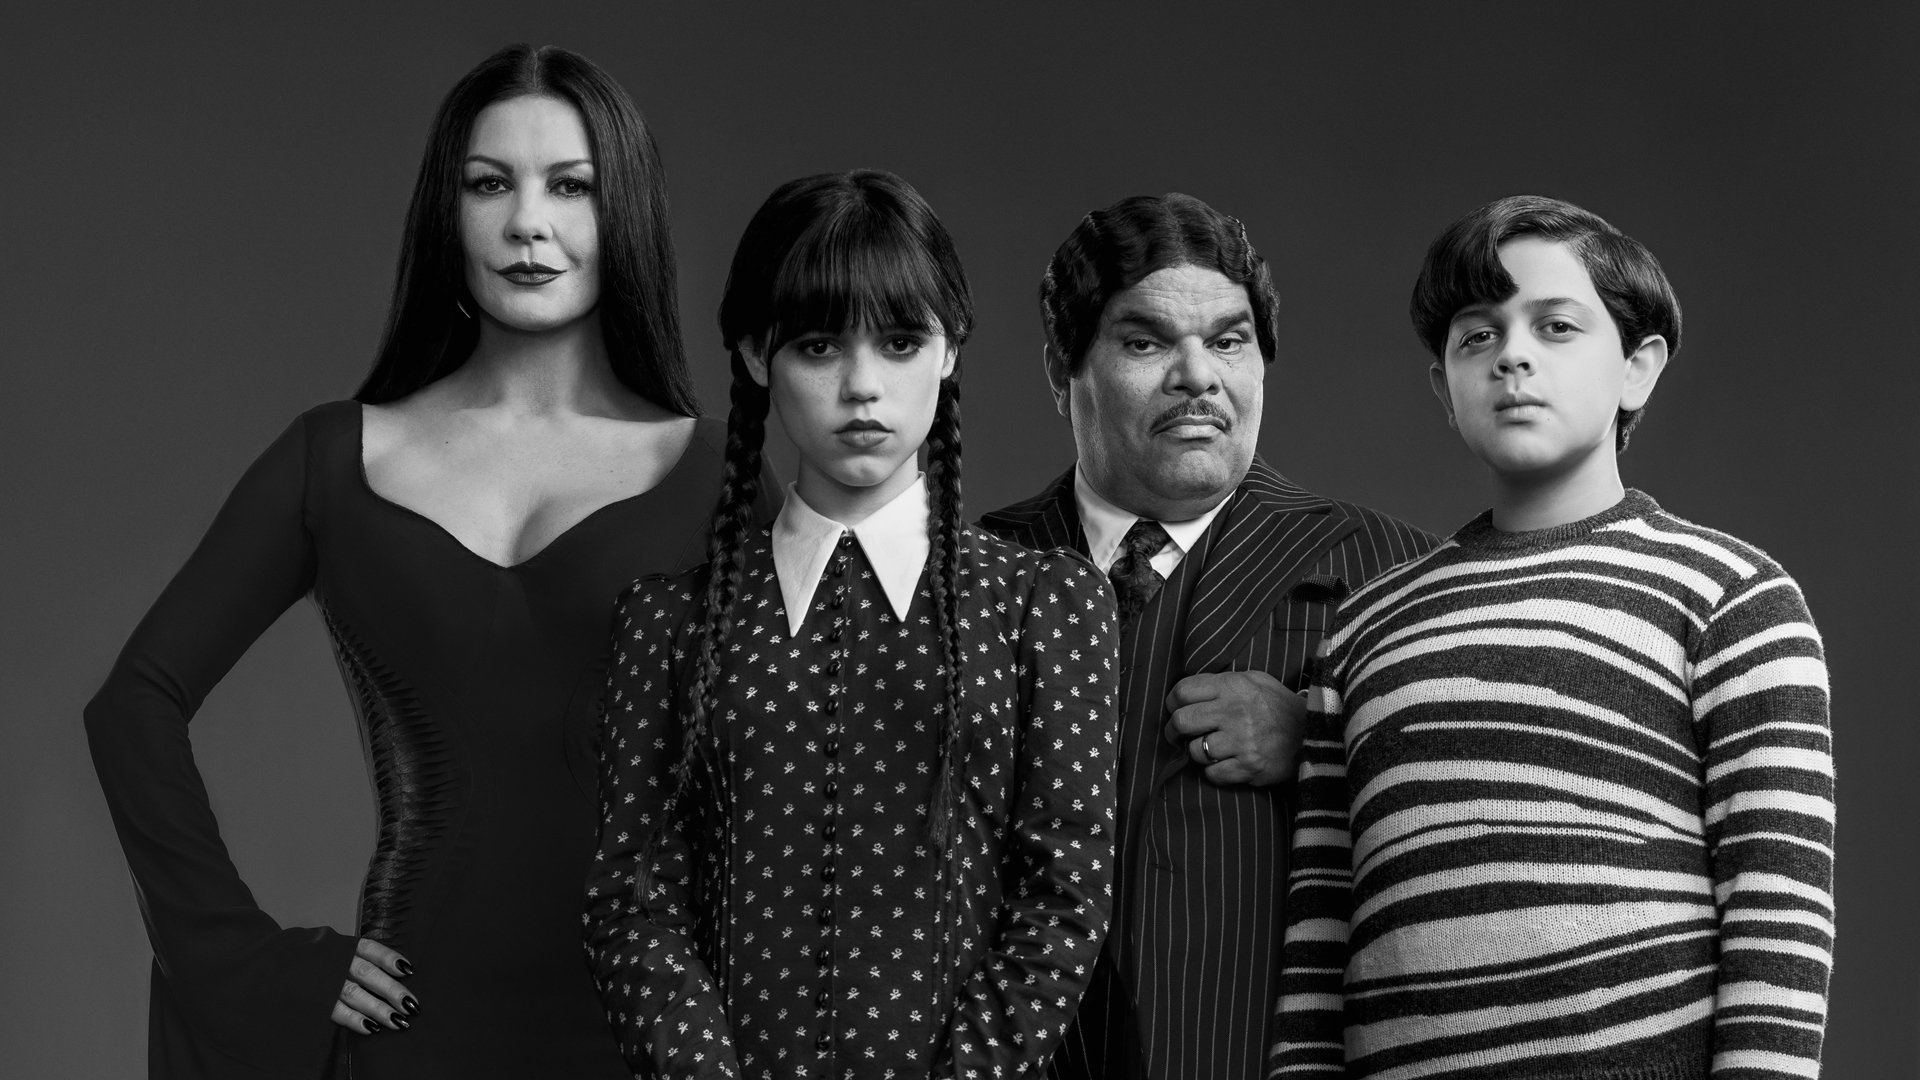 ภาพหน้าจอขาวดำของภาพแรกของครอบครัว Addams สำหรับรายการทีวี Addams ในวันพุธของ Netflix